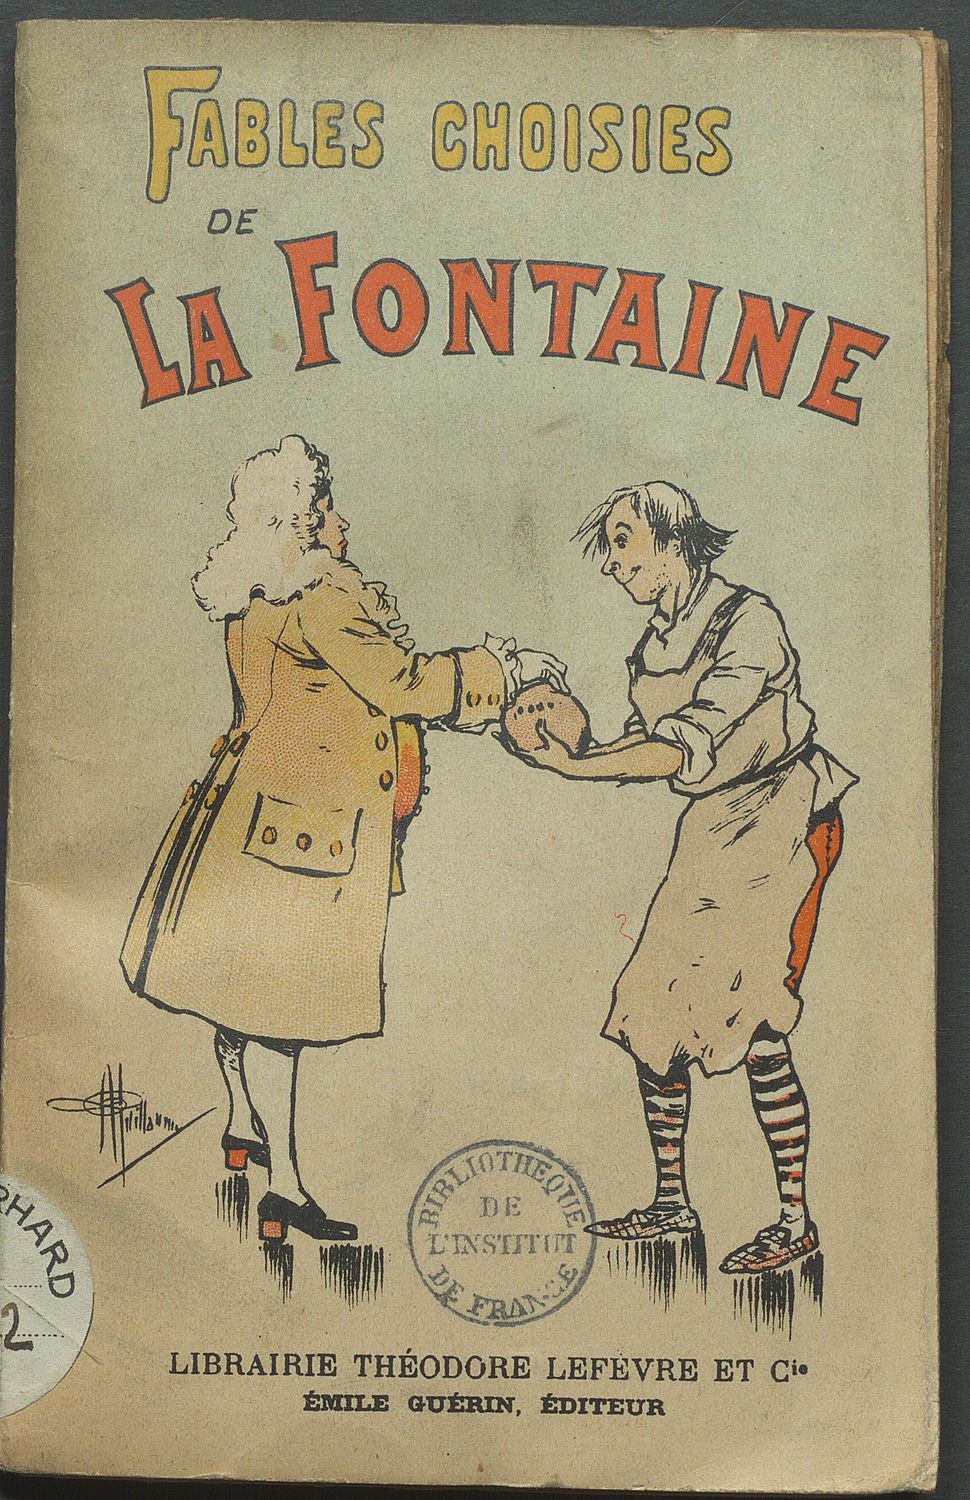 Edition 1901